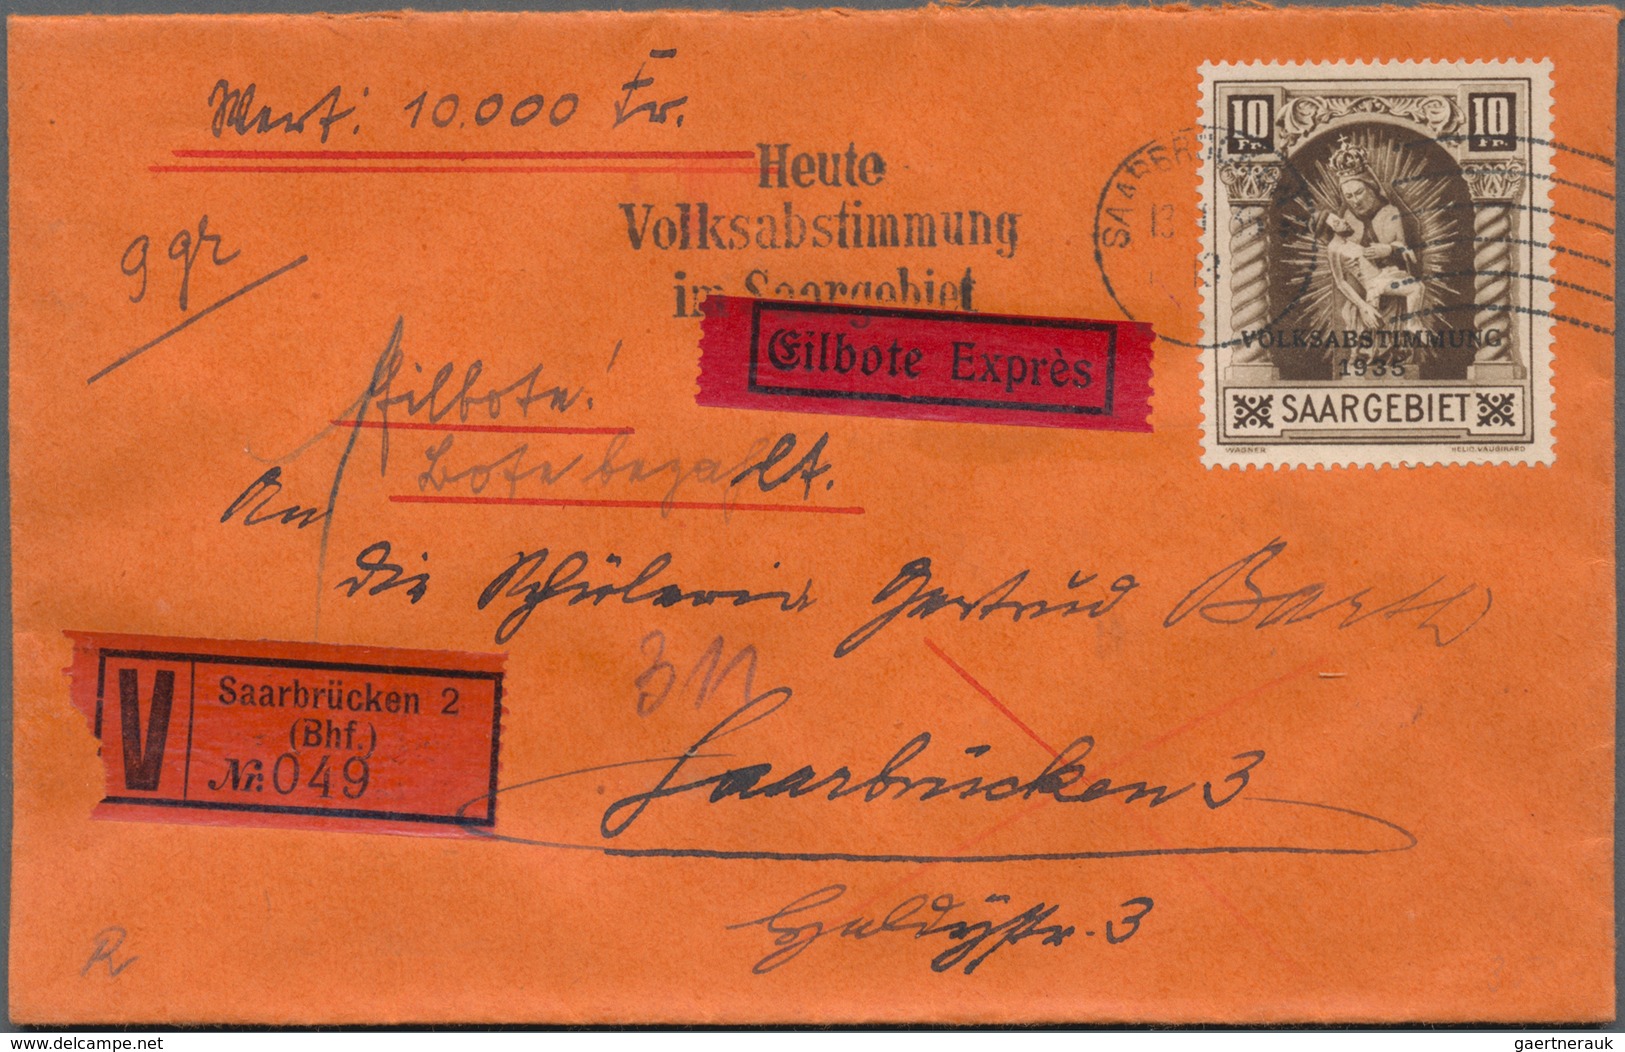 Deutsche Abstimmungsgebiete: Saargebiet: 1920/1956, Alt- und Neusaar, Partie von ca. 105 Briefen und